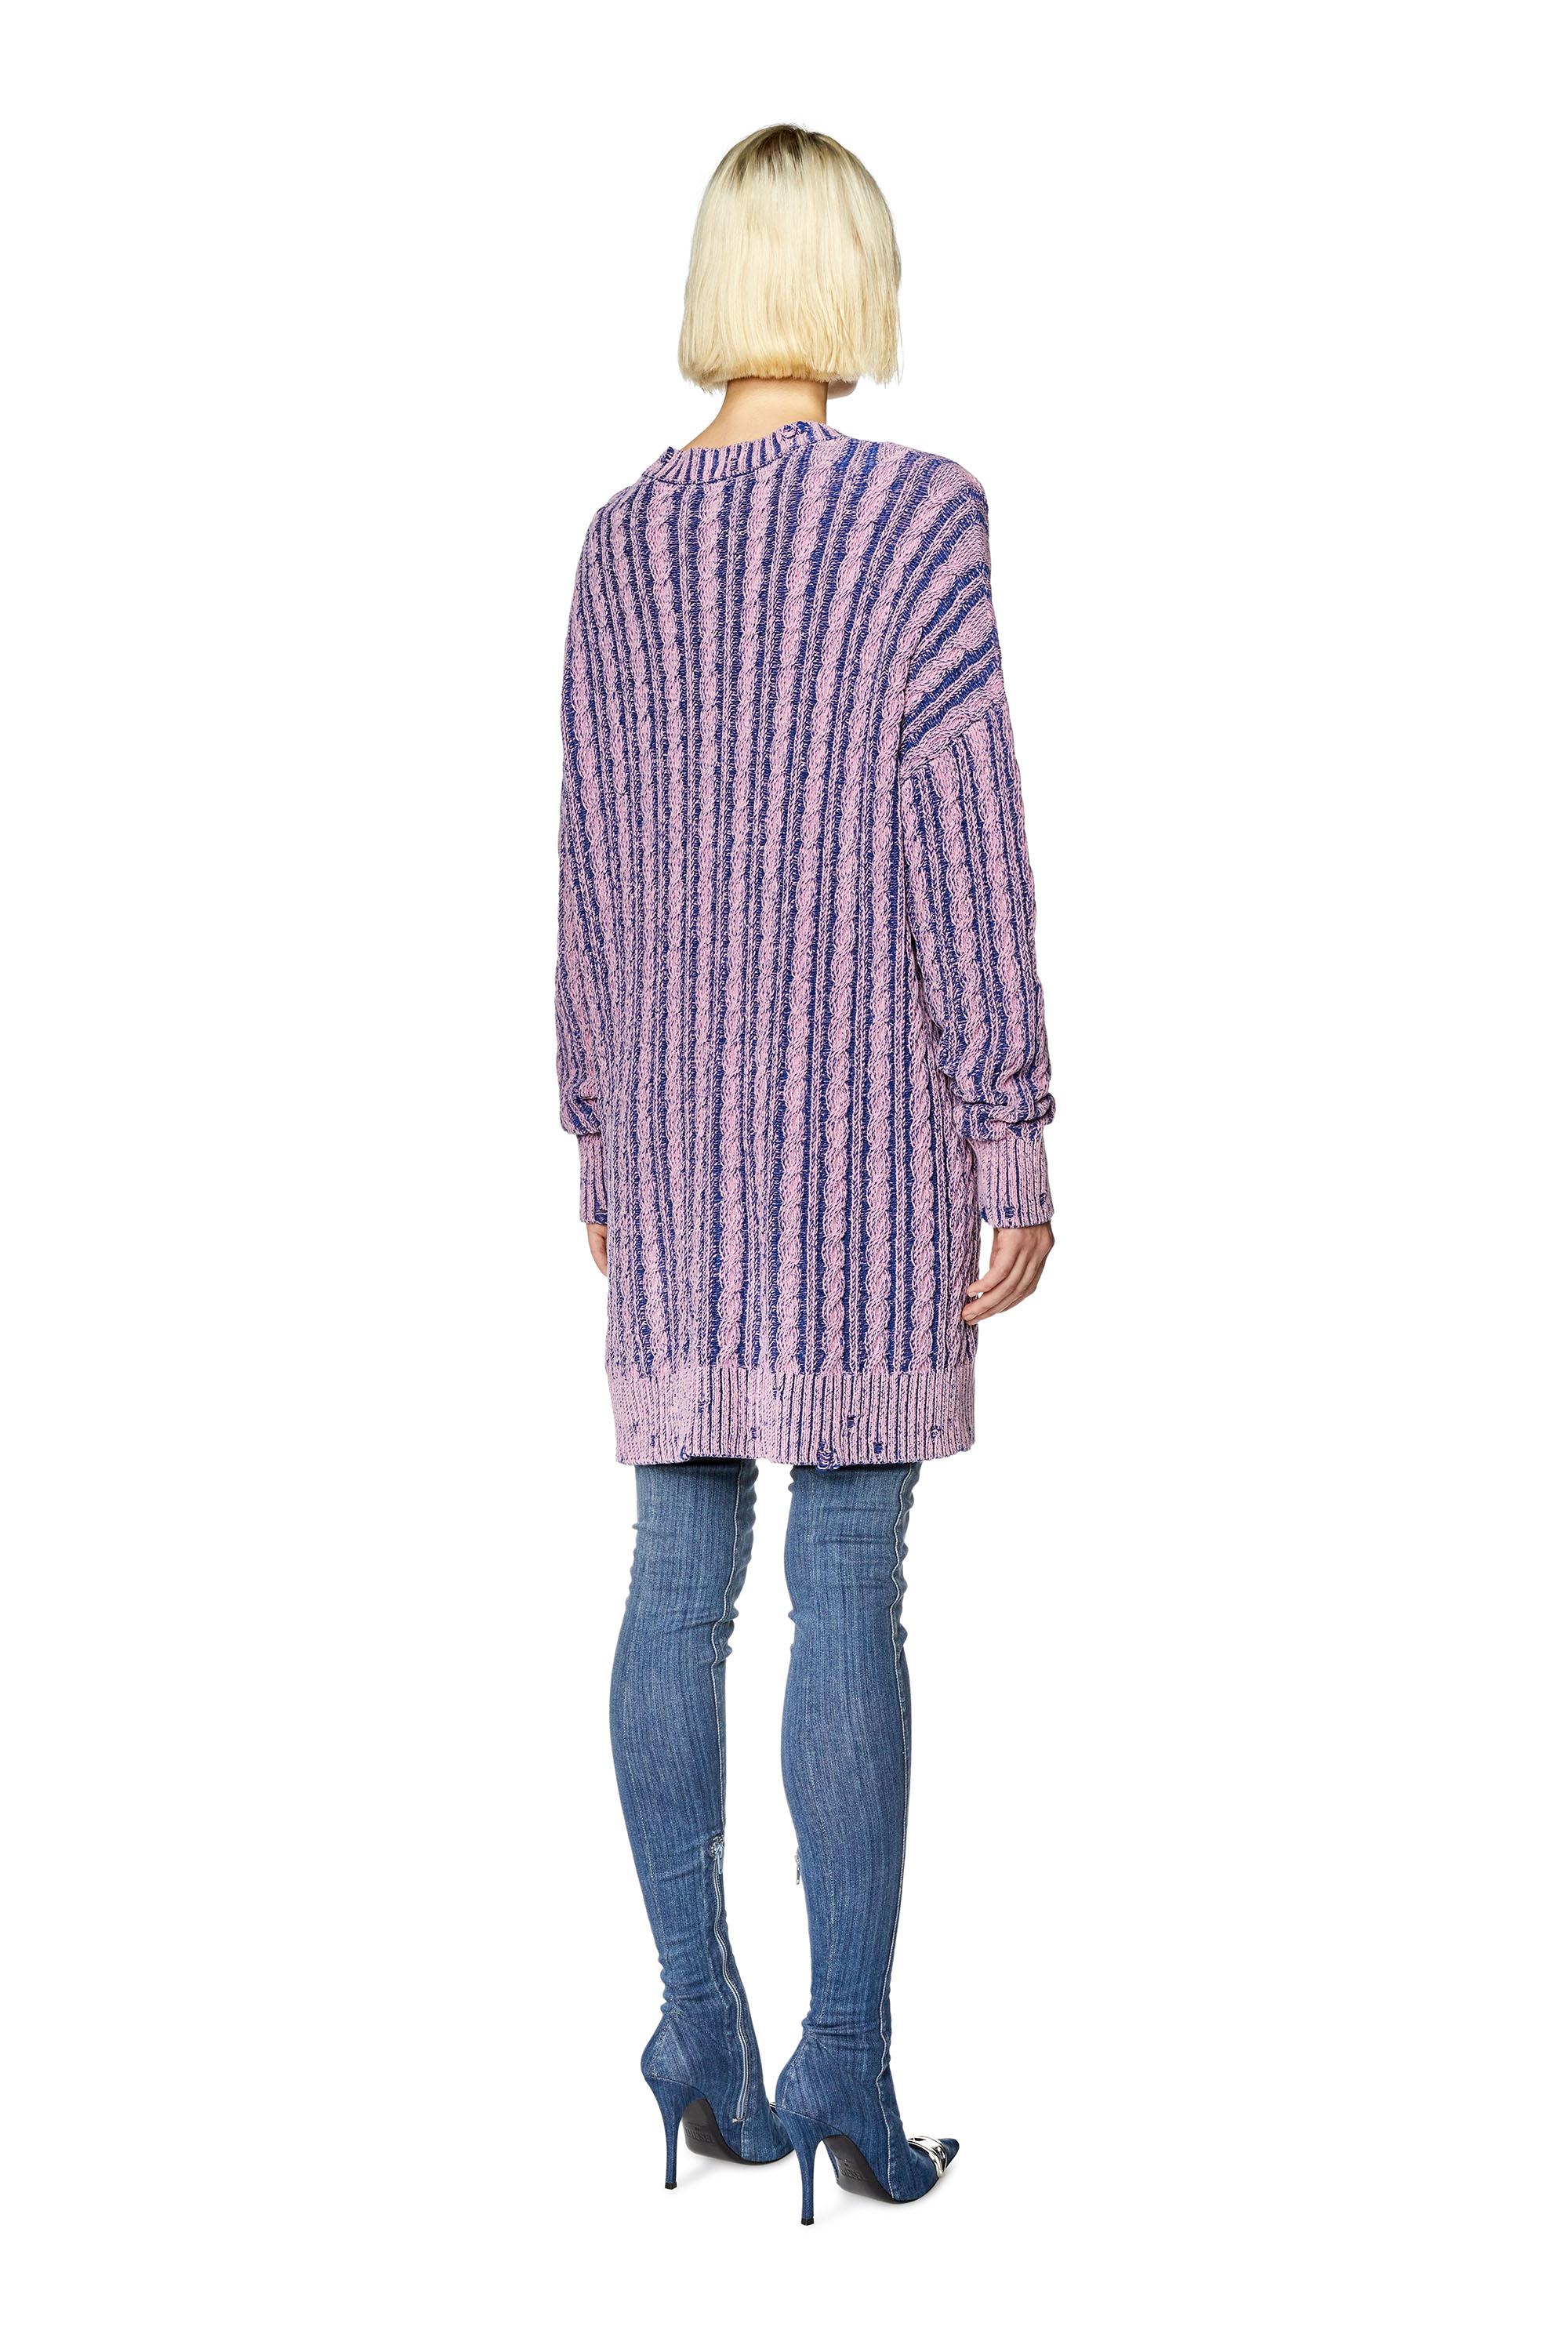 Diesel - Langer Pullover aus zweifarbiger Baumwolle - Strickwaren - Damen - Violett